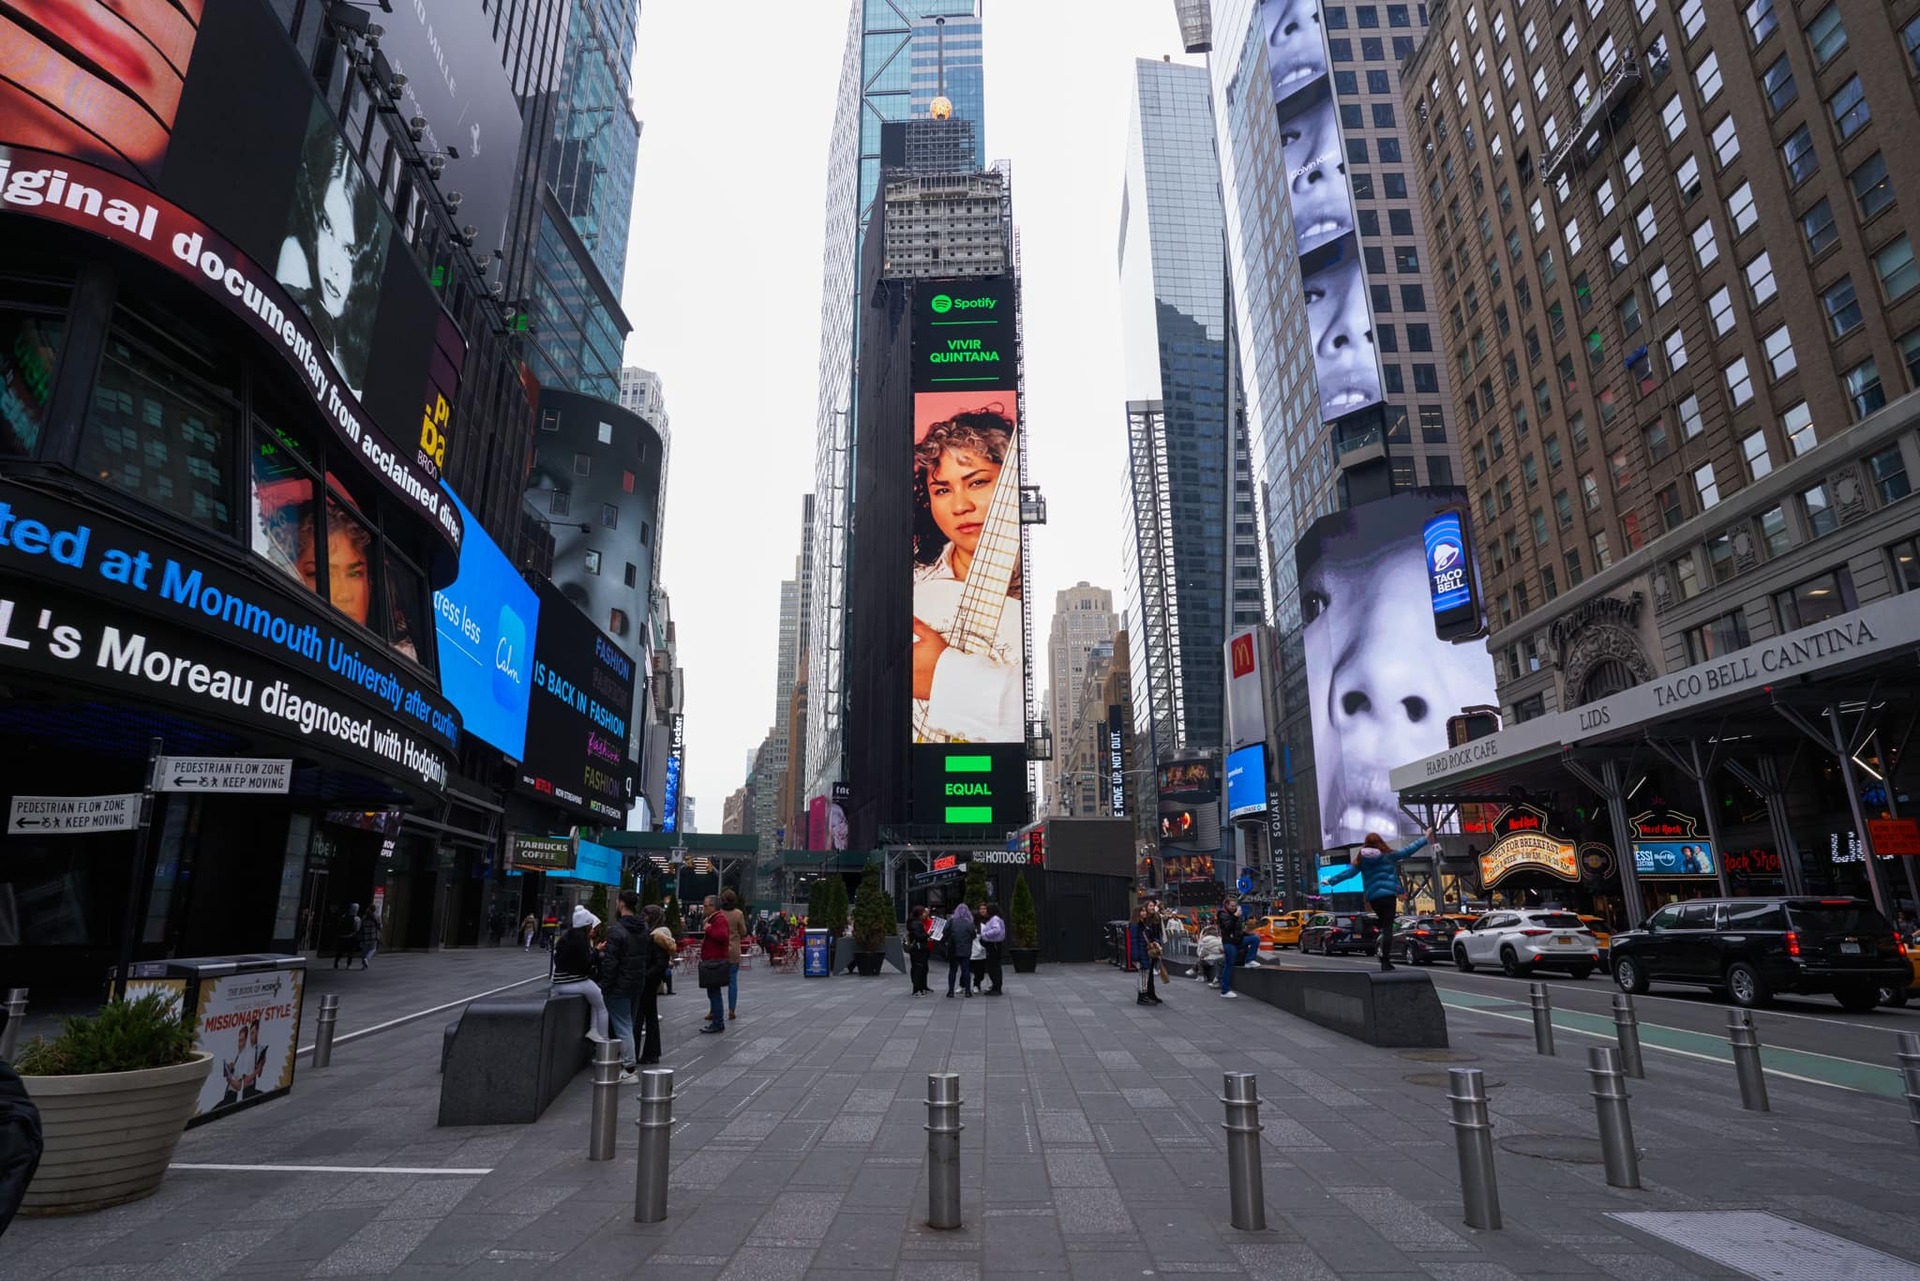 Vivir Quintana llega hasta las pantallas del Time Square de Nueva York